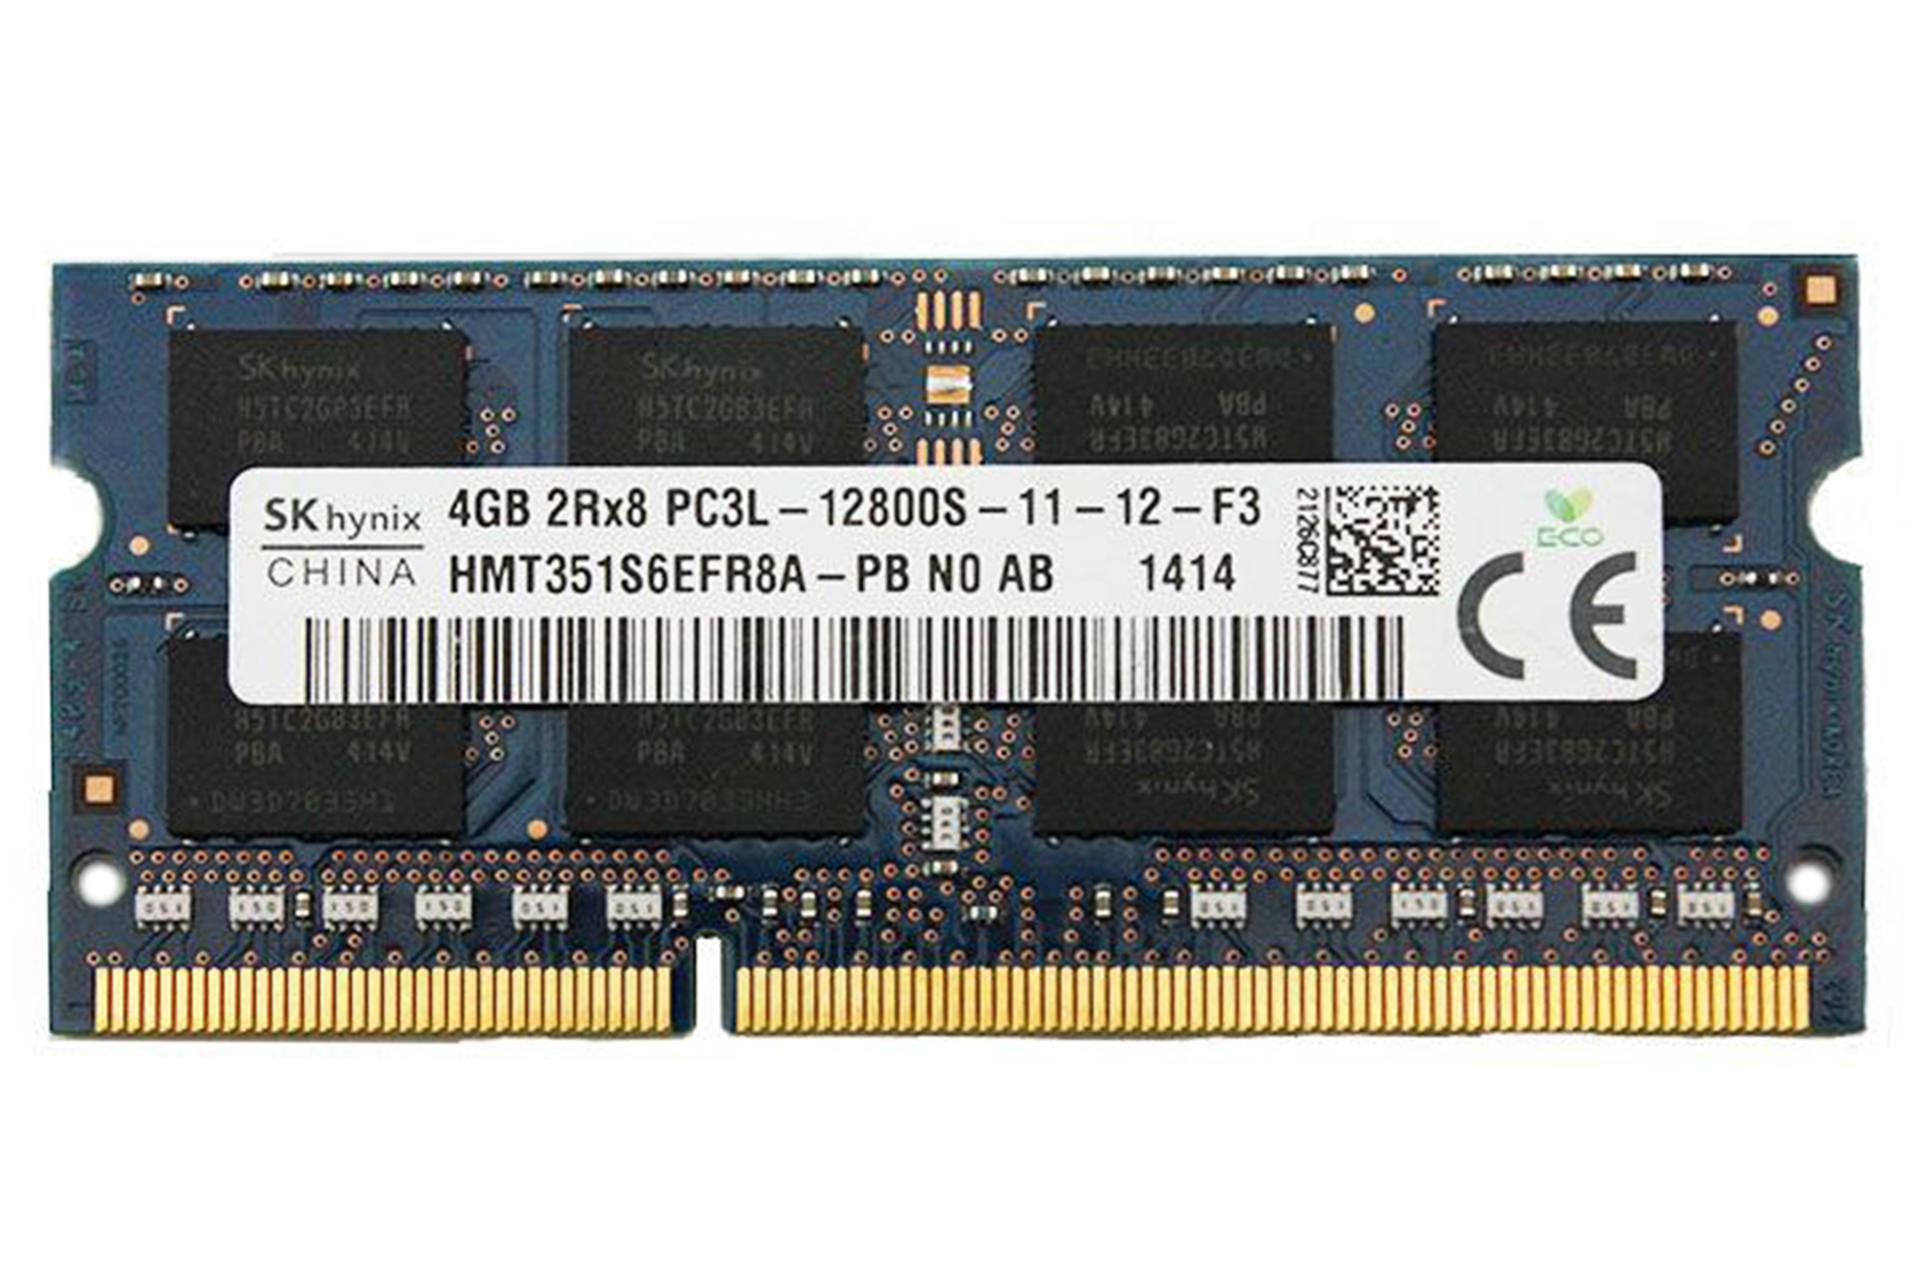 رم اس کی هاینیکس HMT351S6EFR8A-PB ظرفیت 4 گیگابایت از نوع DDR3L-1600